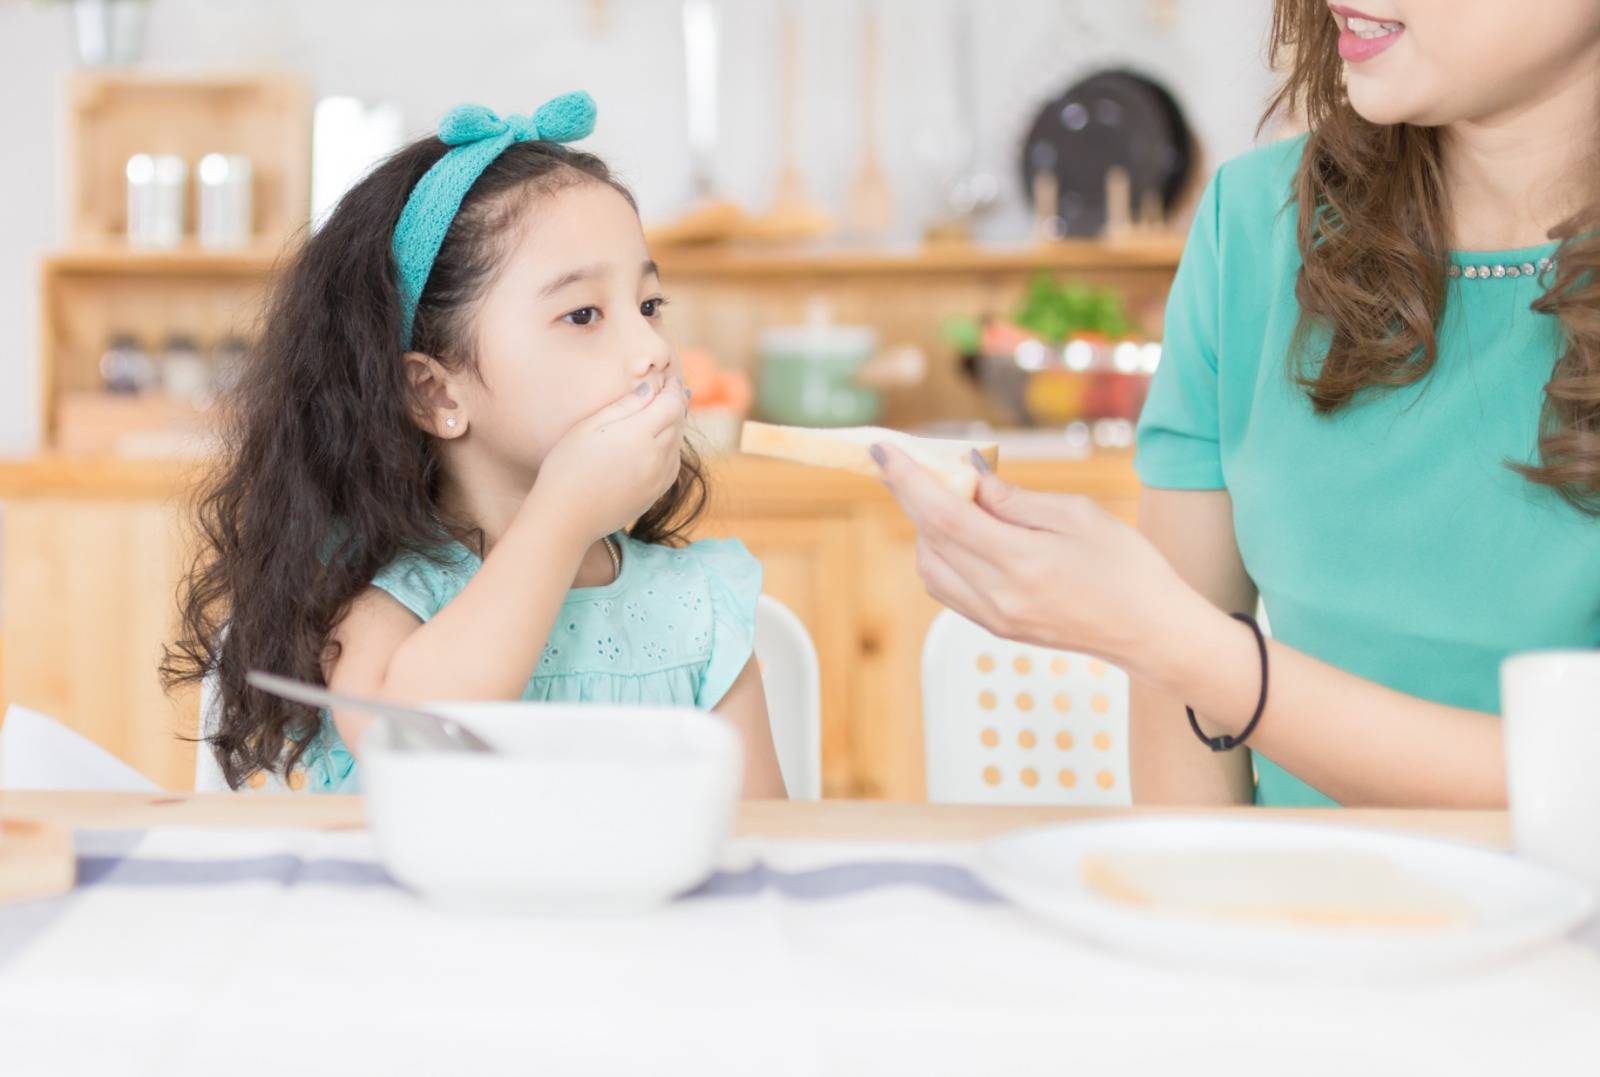 子女食飯太慢 父母擔心食唔飽唔吸收 5招增孩子食飯興趣